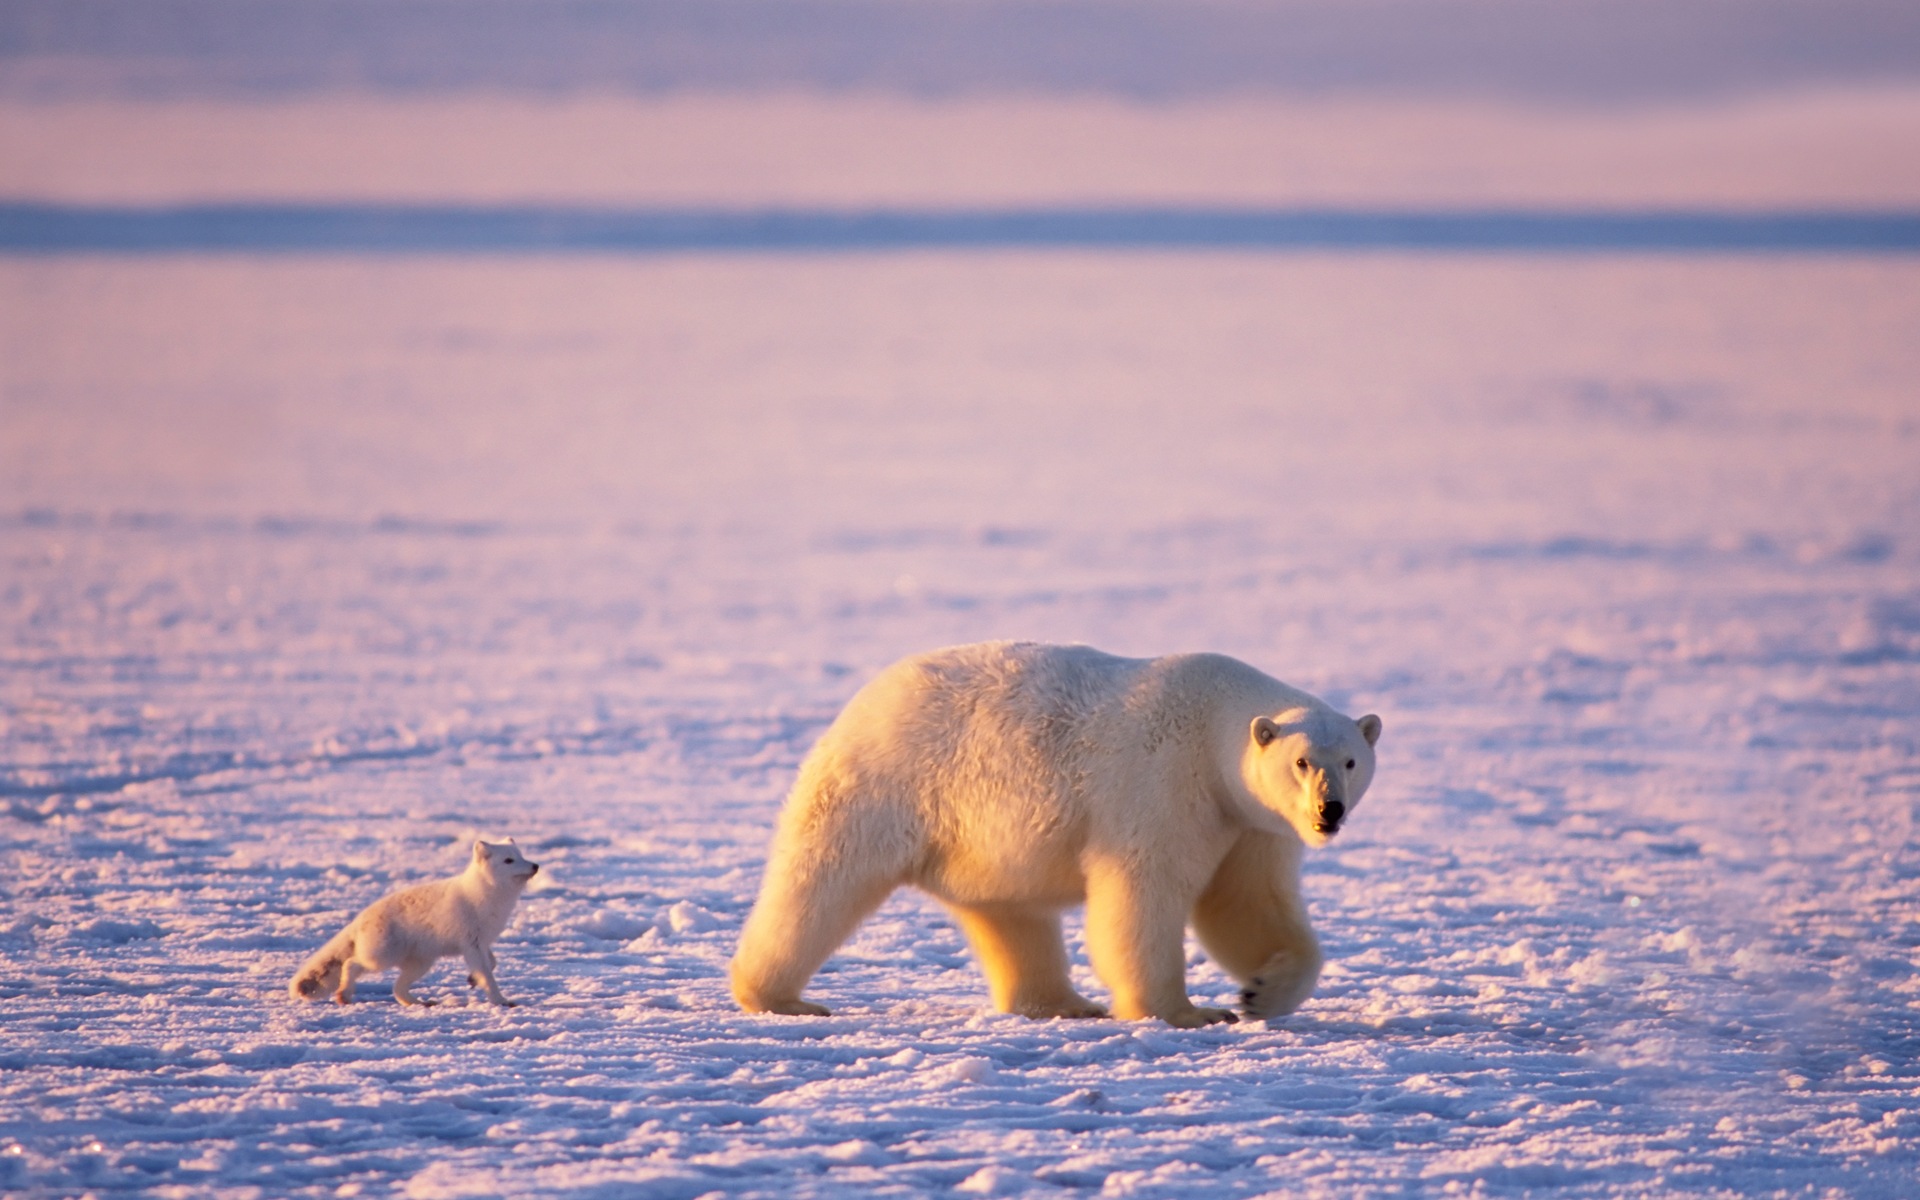 Windows 8: Fondos del Ártico, el paisaje ecológico, ártico animales #10 - 1920x1200